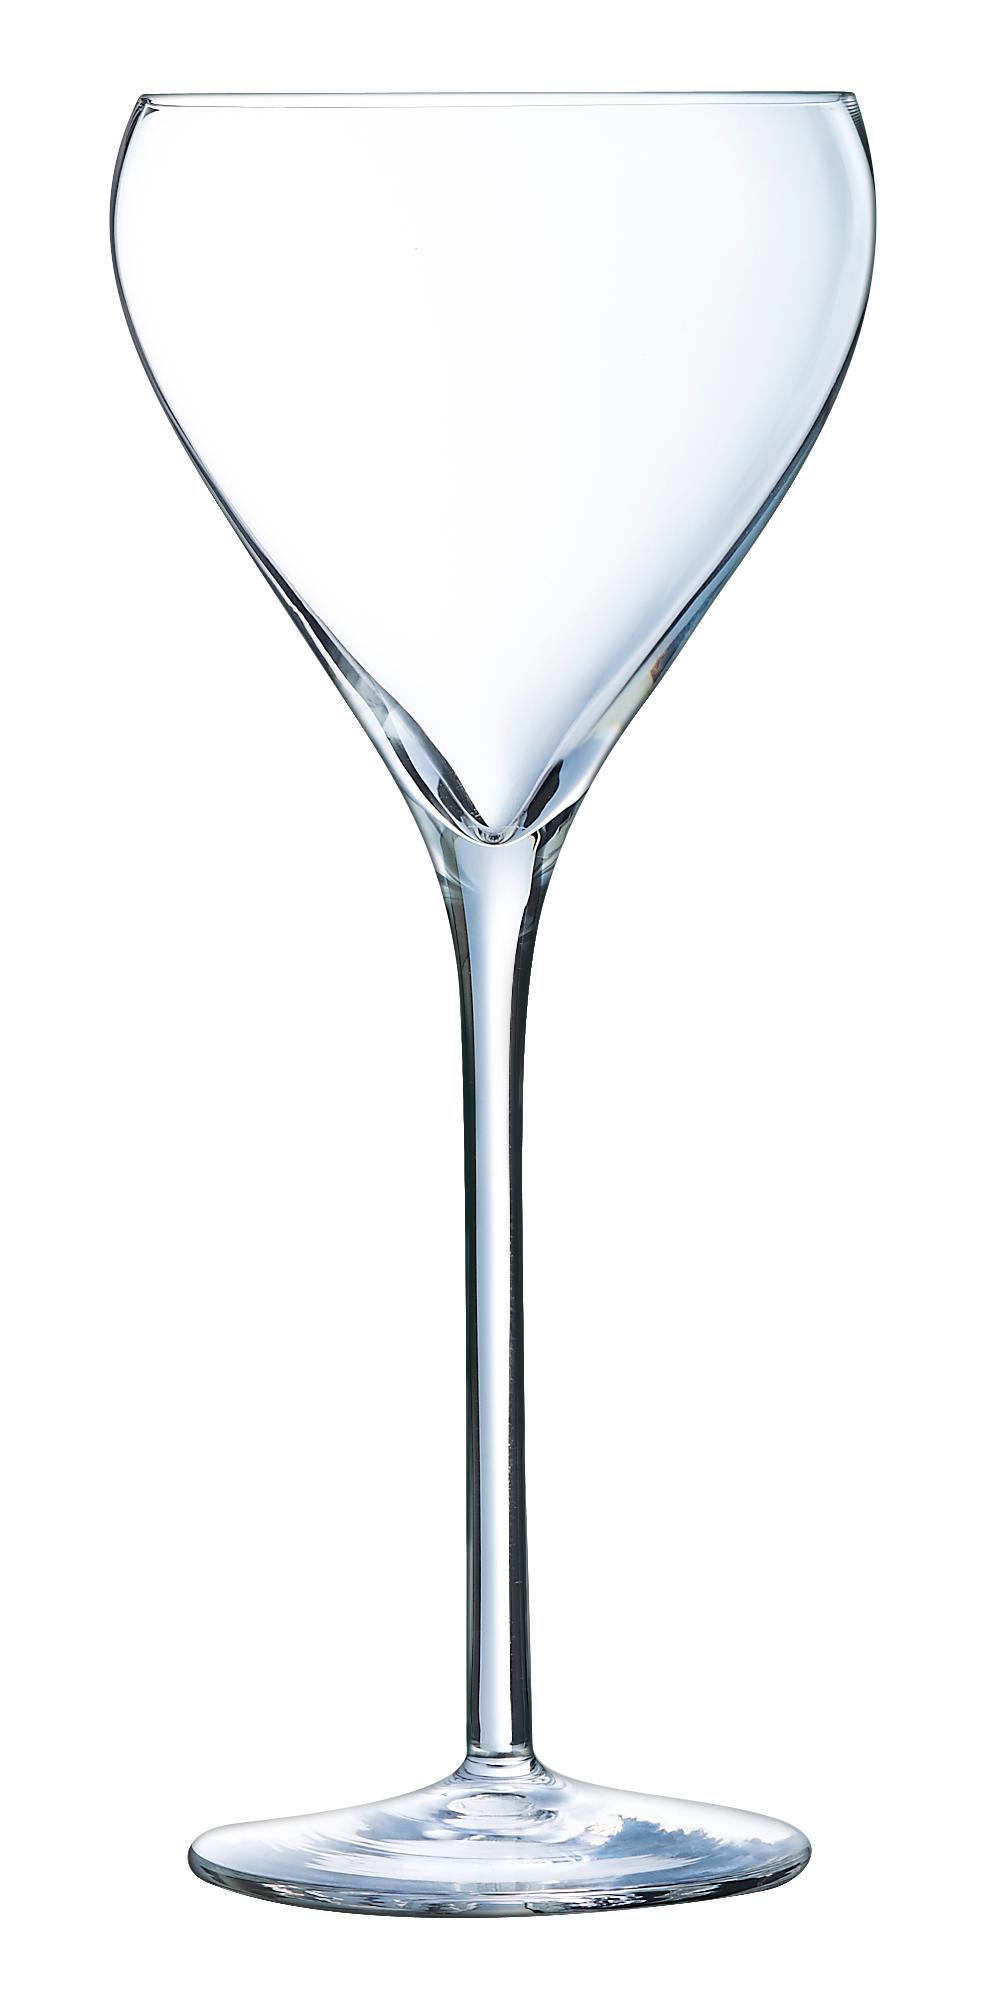 Brio coupe champagne glass, 210ml